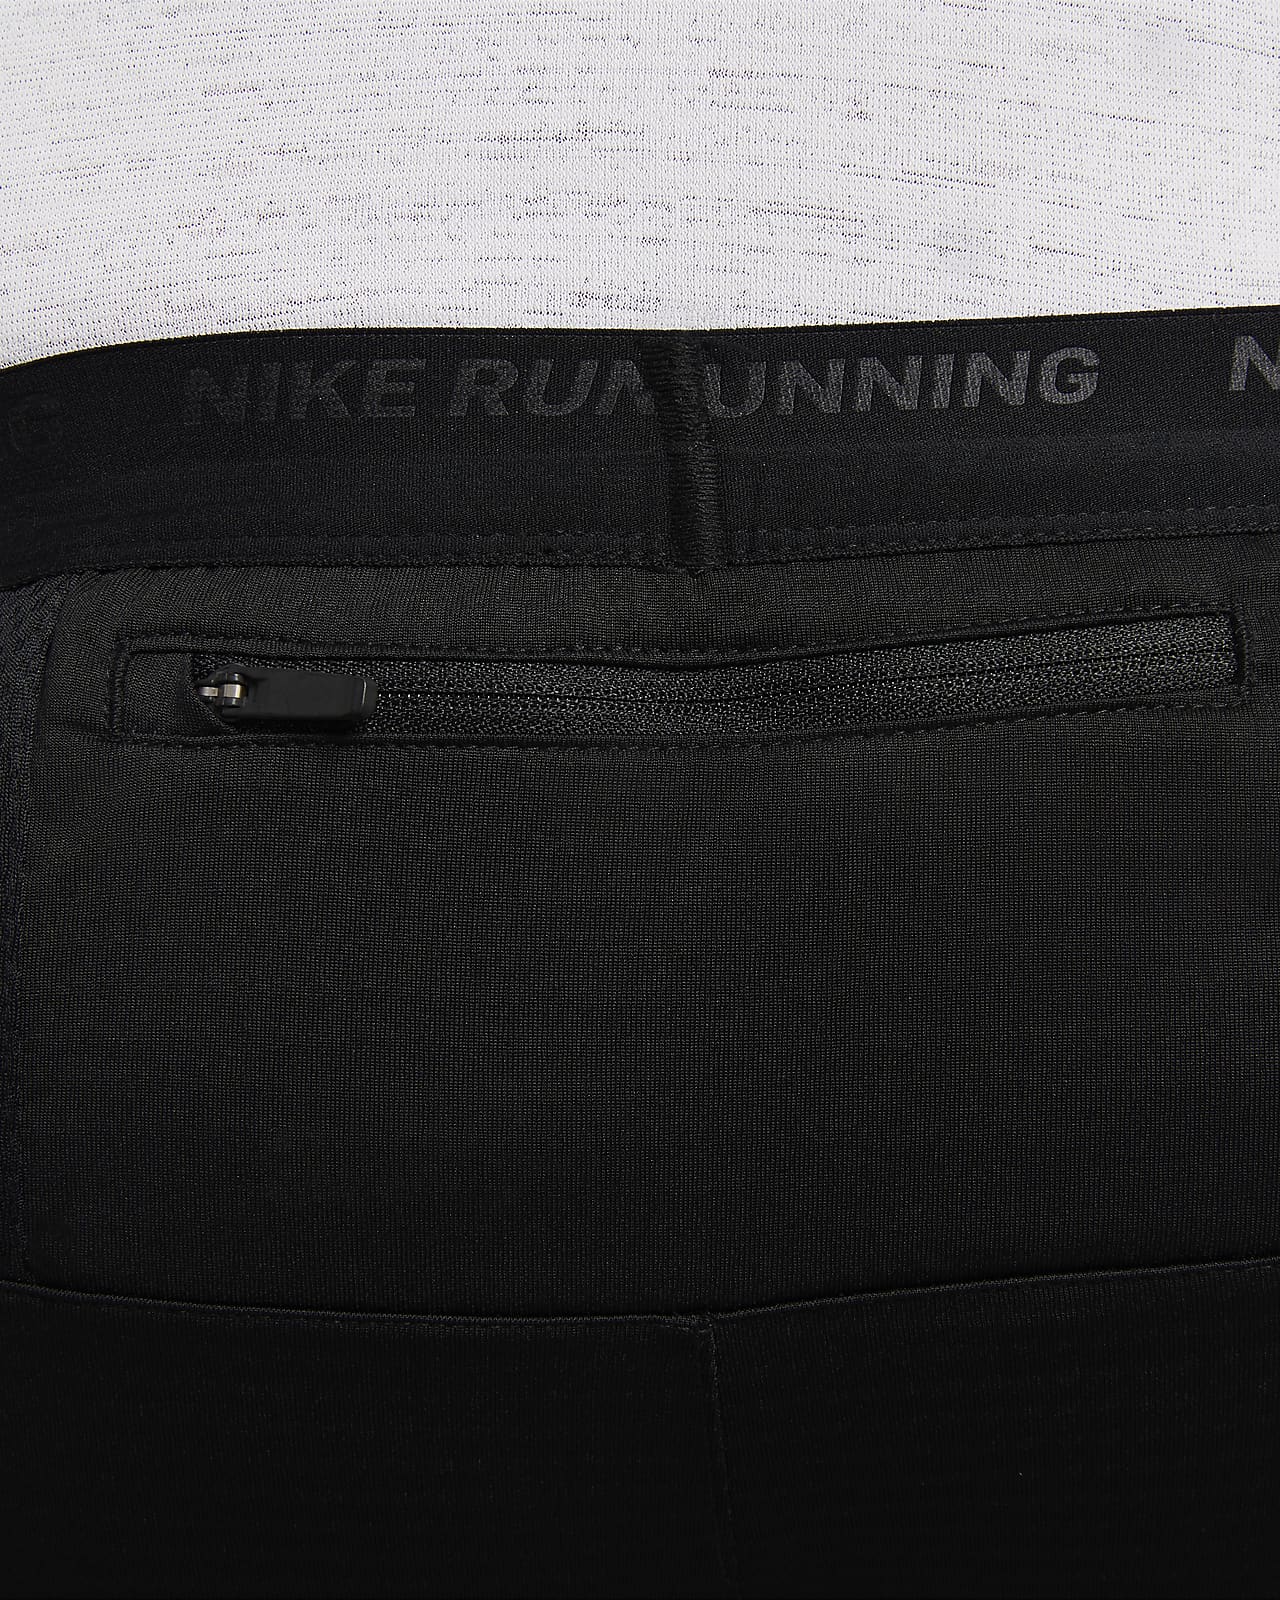 Pantalon de running en maille Dri-FIT Nike Phenom pour homme